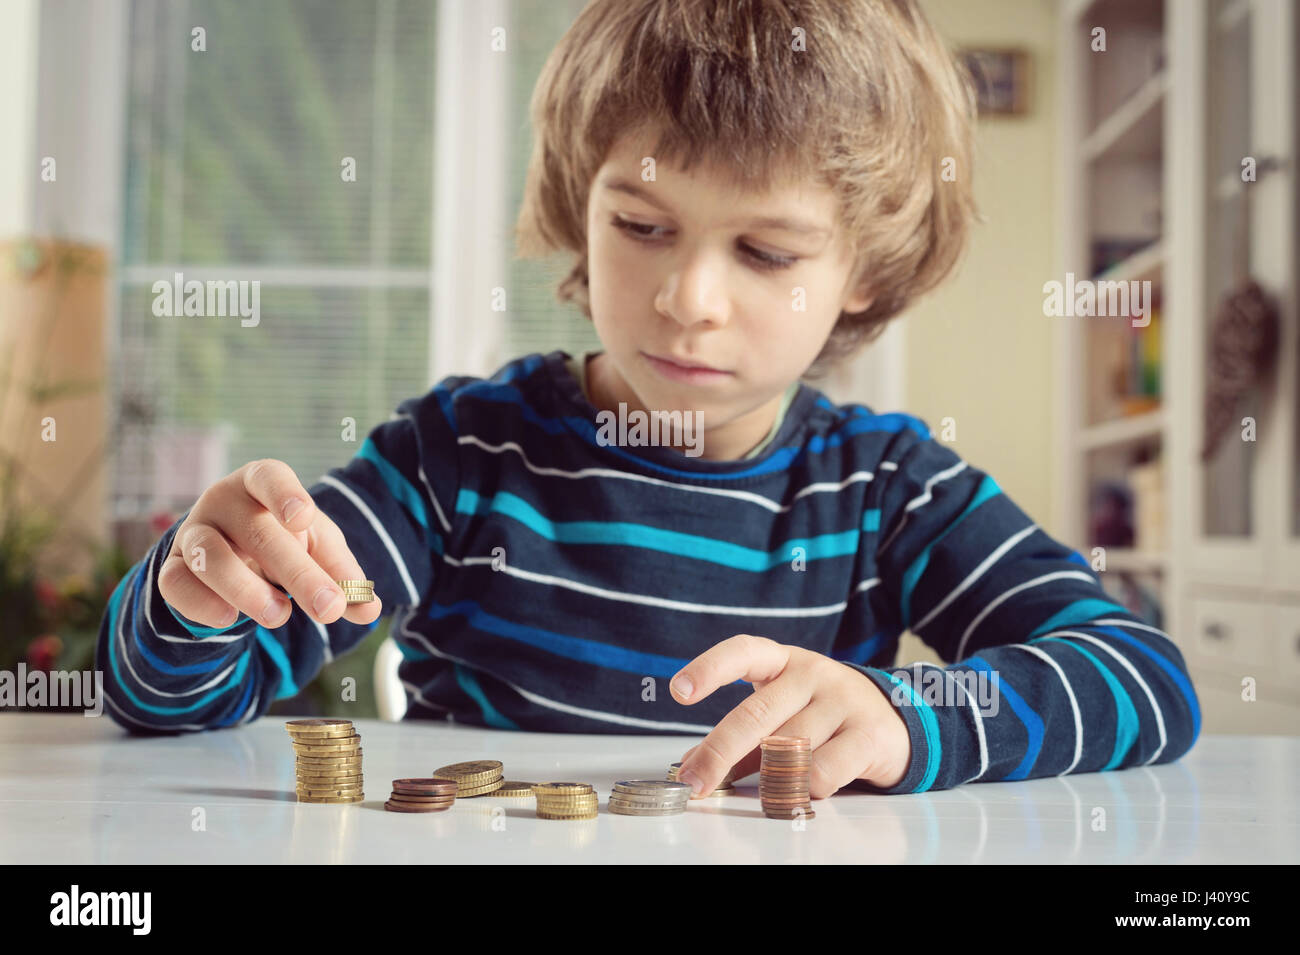 Chico jugando con monedas que se apila. Aprender finanncial responsabilidad y planificación concepto de ahorro. Foto de stock